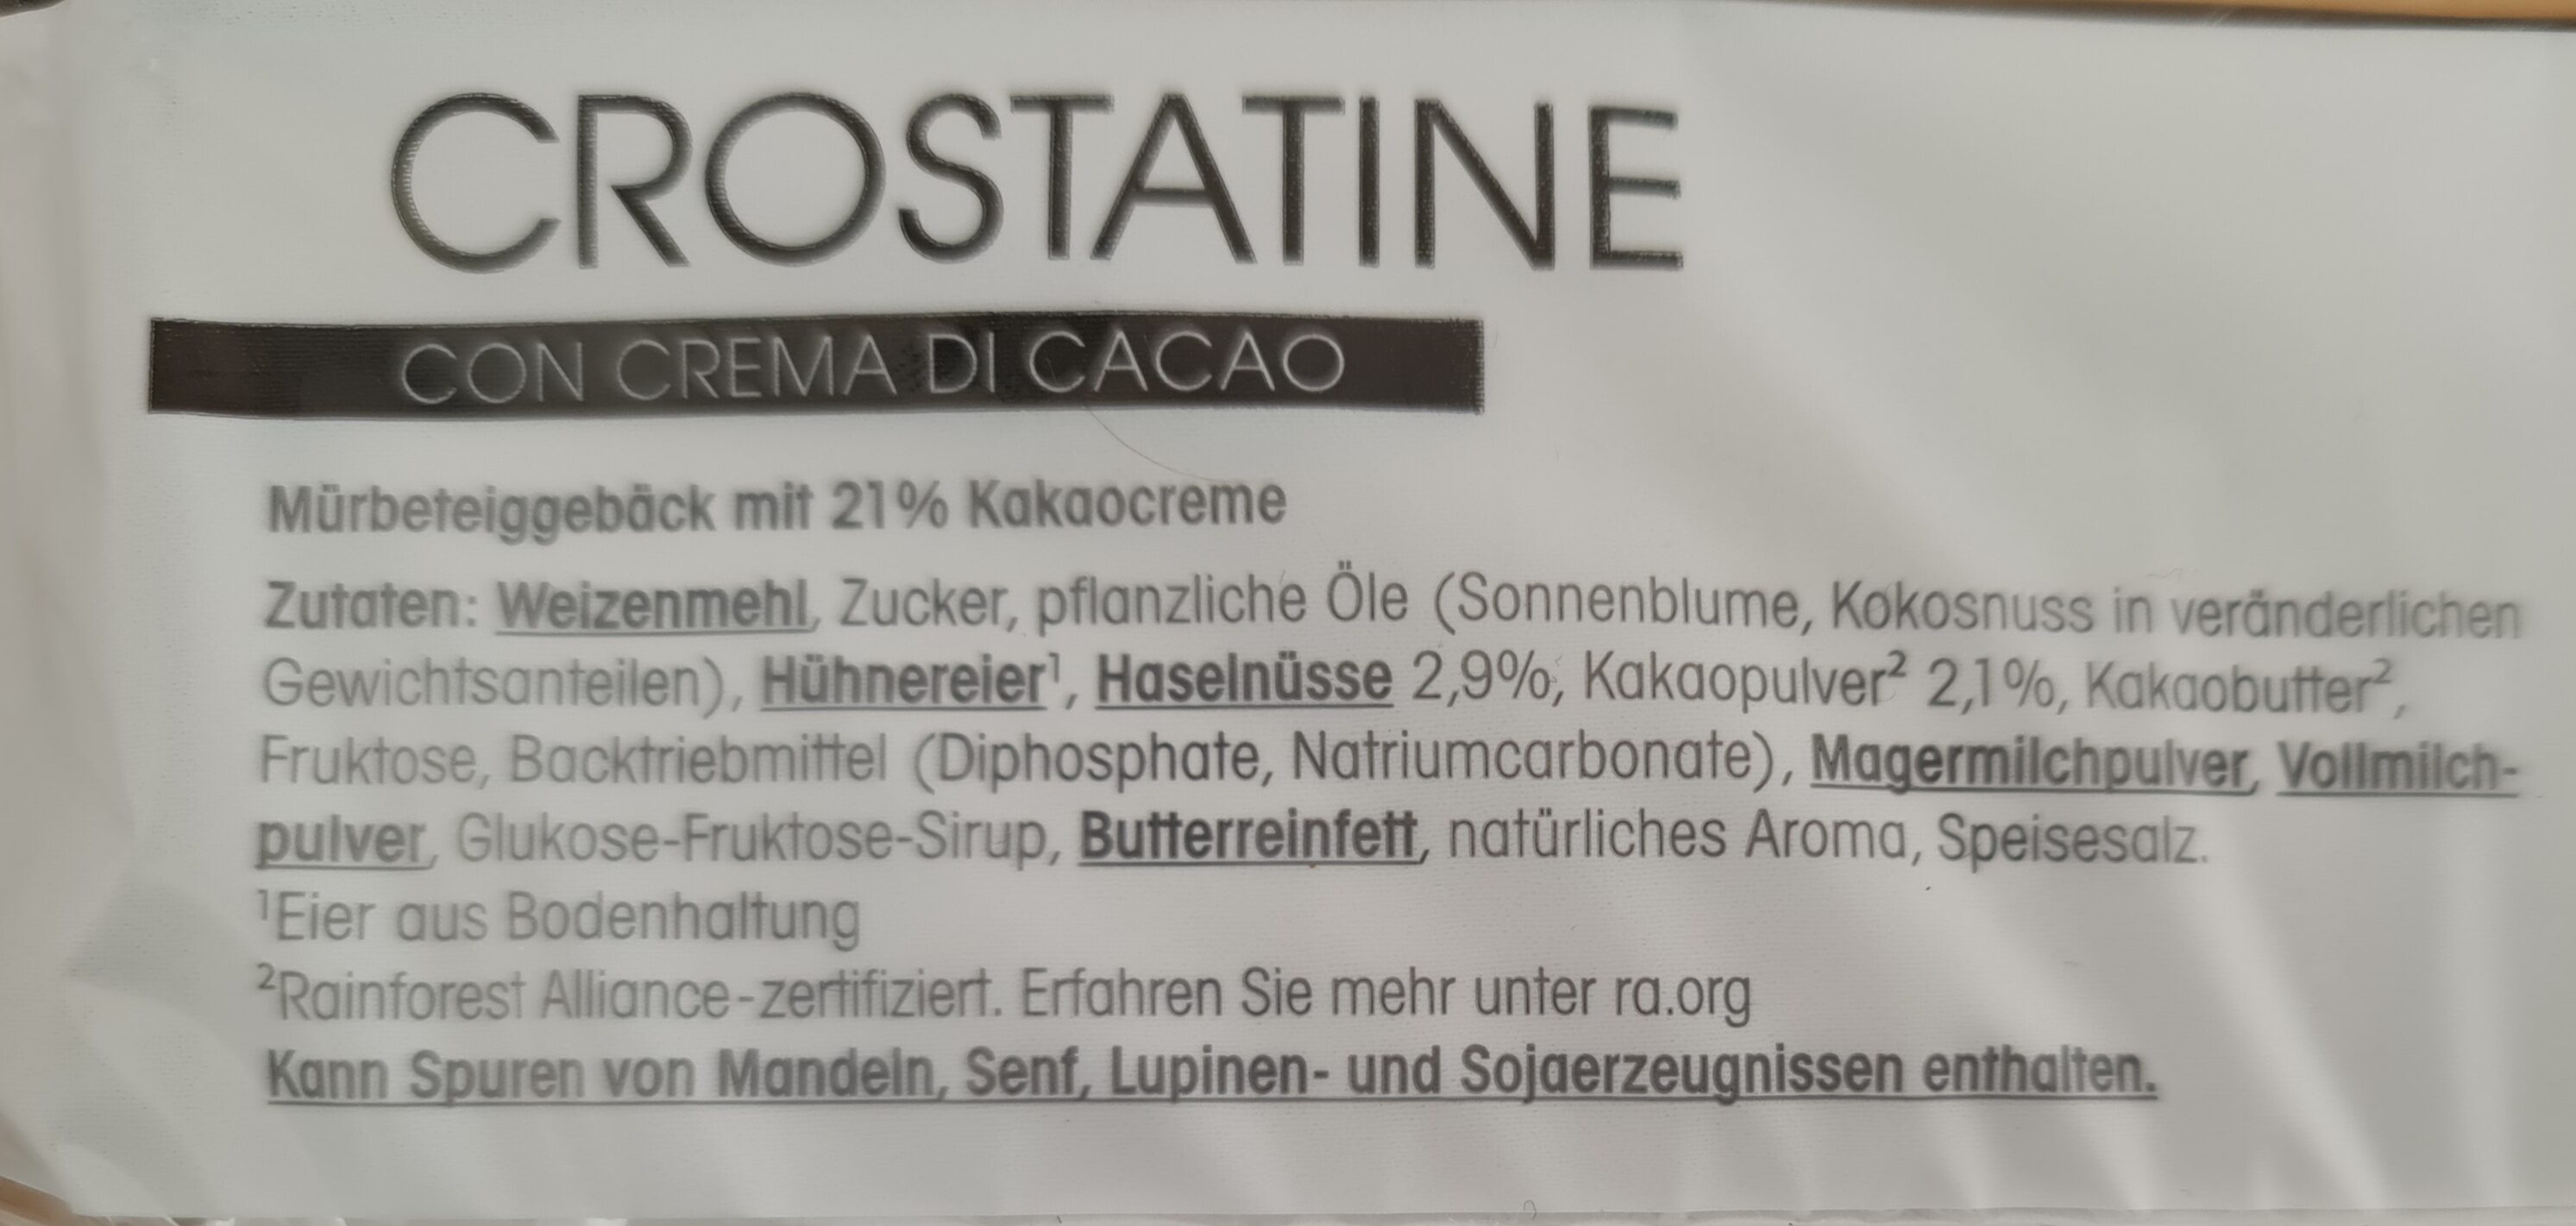 Crostatine - Zutaten